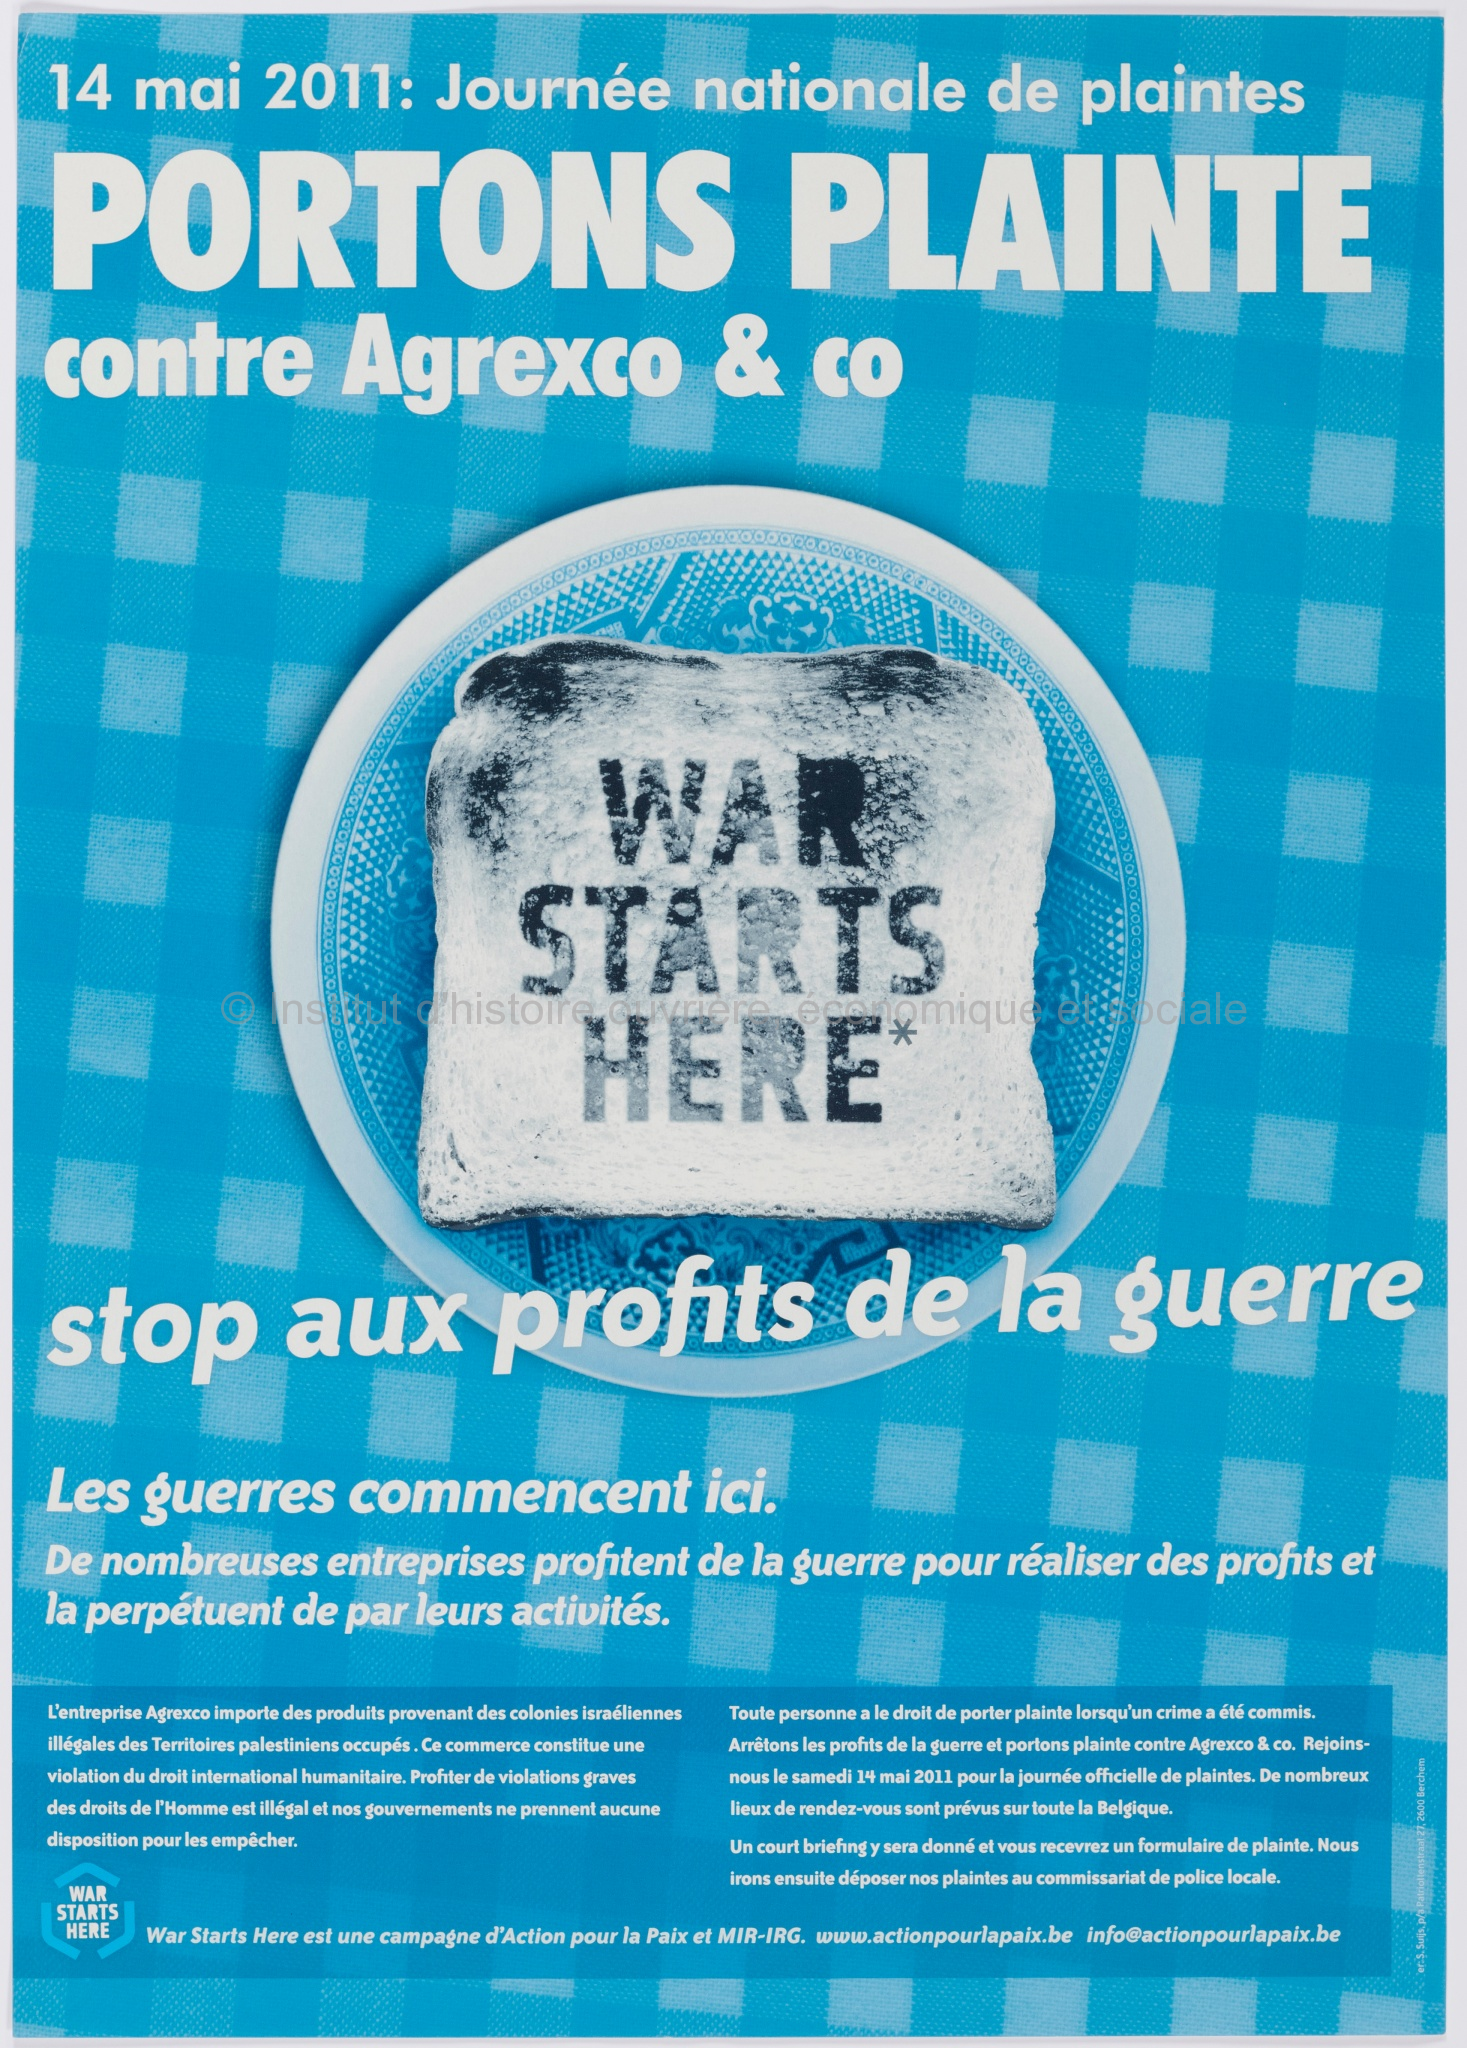 Portons plainte contre Agrexco & co : stop aux profits de la guerre : 14 mai 2011, journée nationale de plaintes